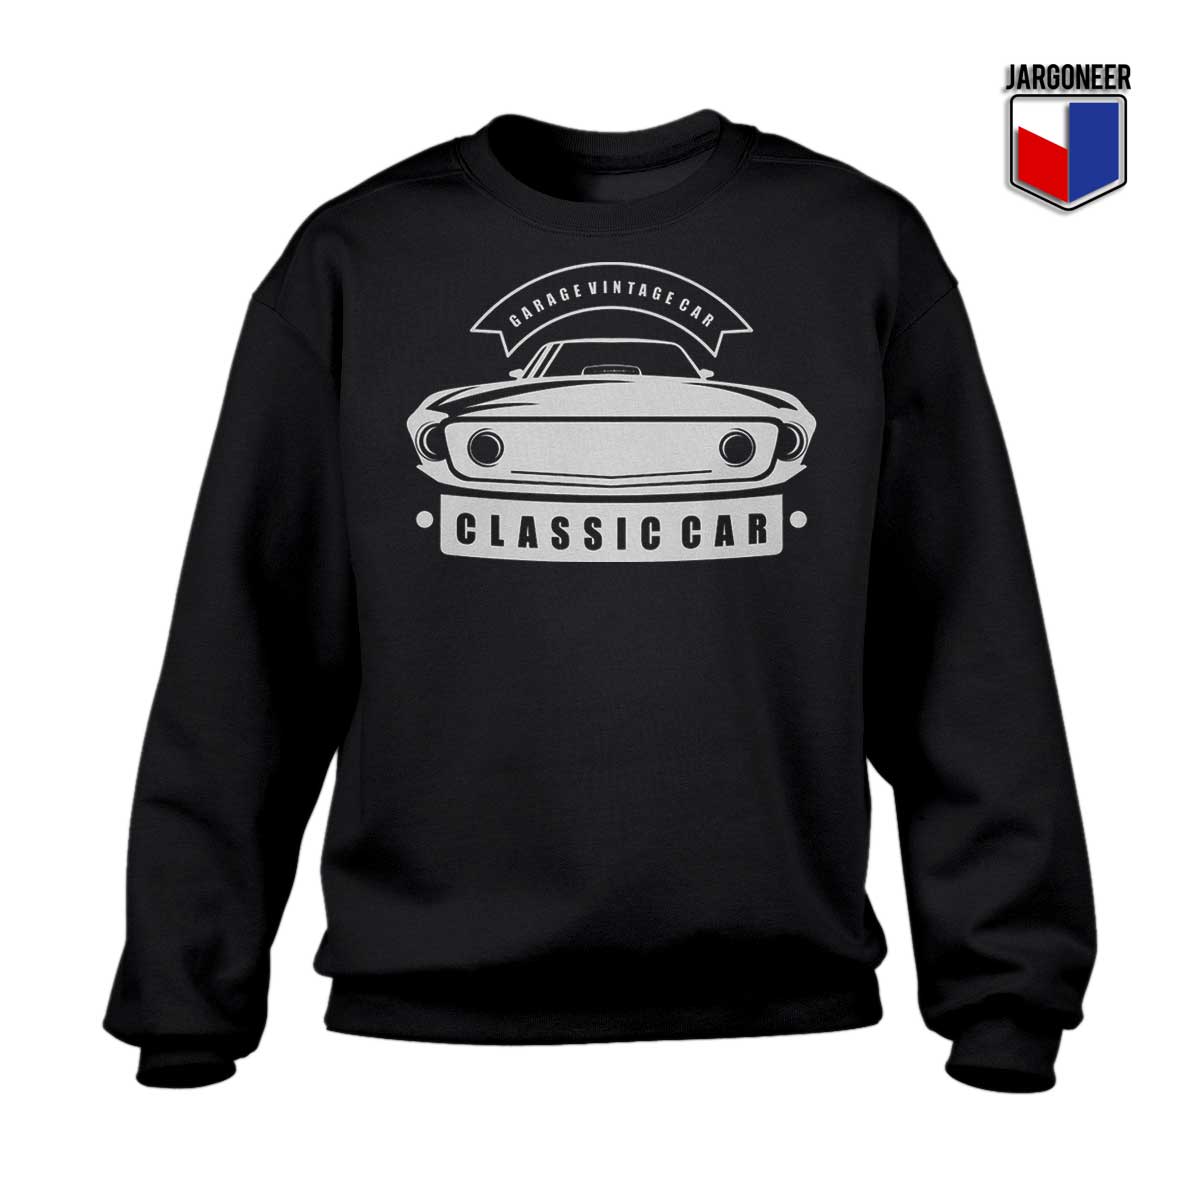 Classic Car Garage Vintage Black Sweatshirt - Shop Unique Graphic Cool Shirt Designs